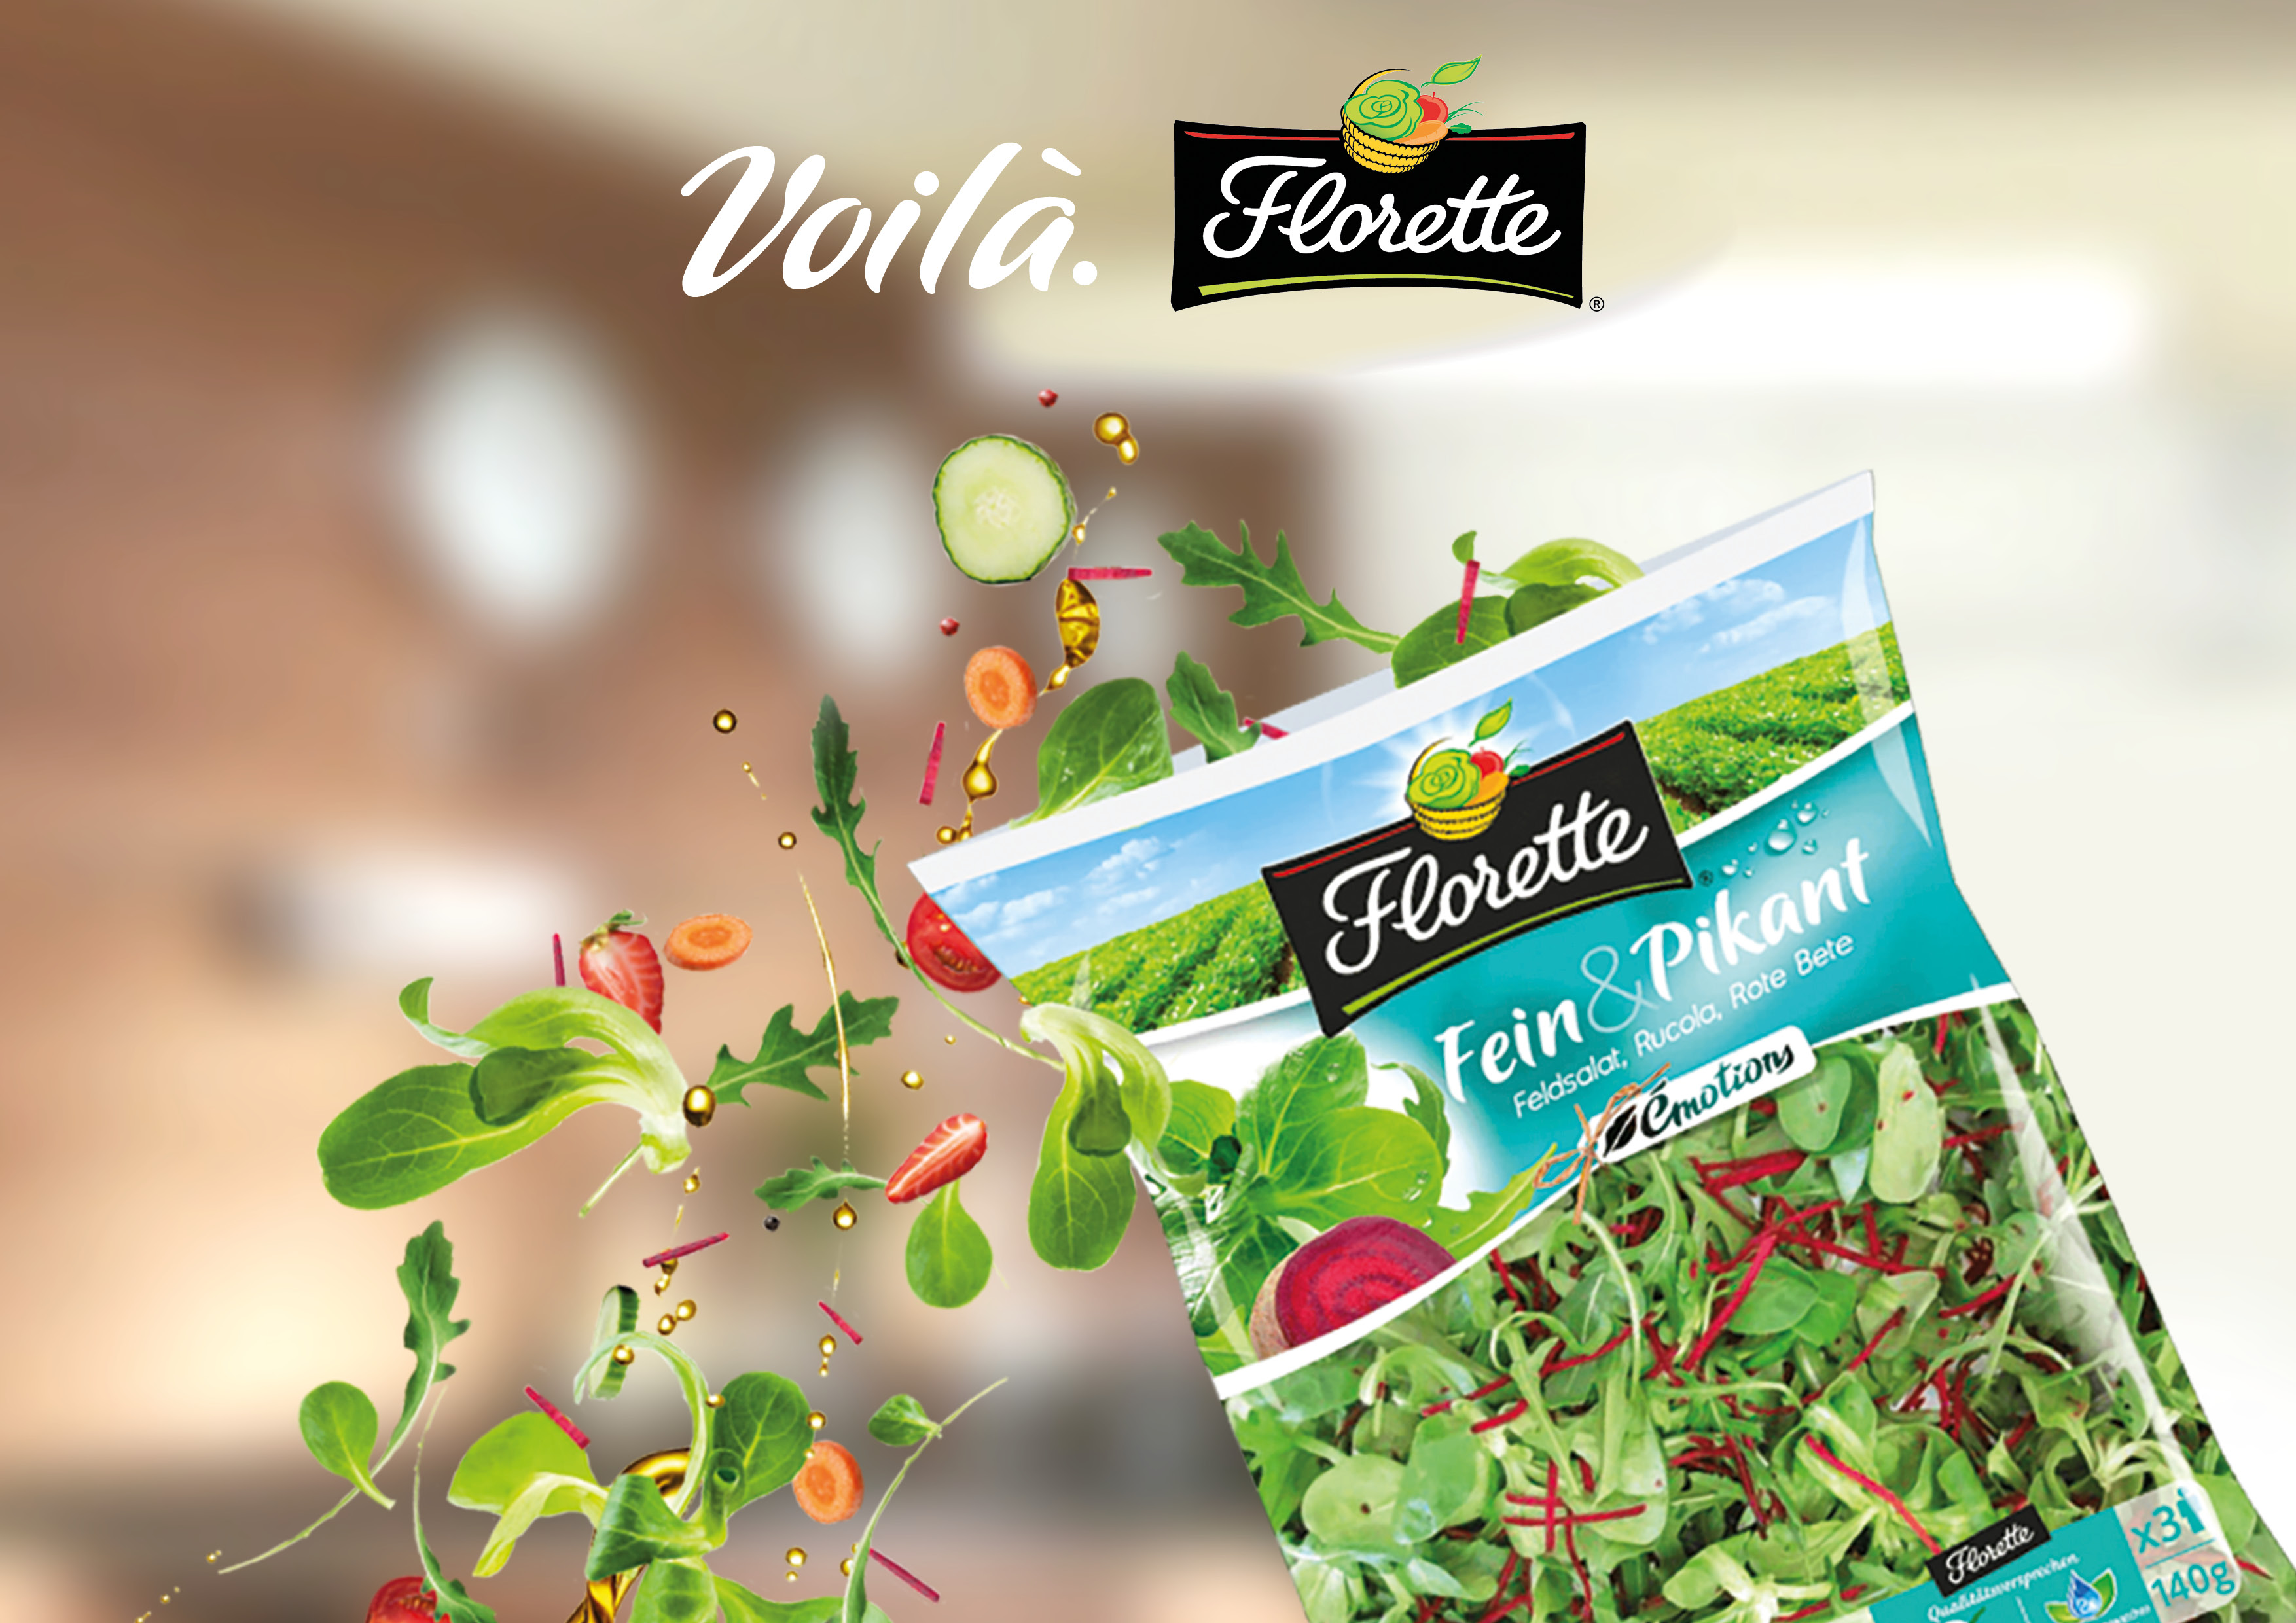 Salatmischung Fein & Pikant von Florette, dynamisch in Szene gesetzt zur neuen Voilà-Kampagne